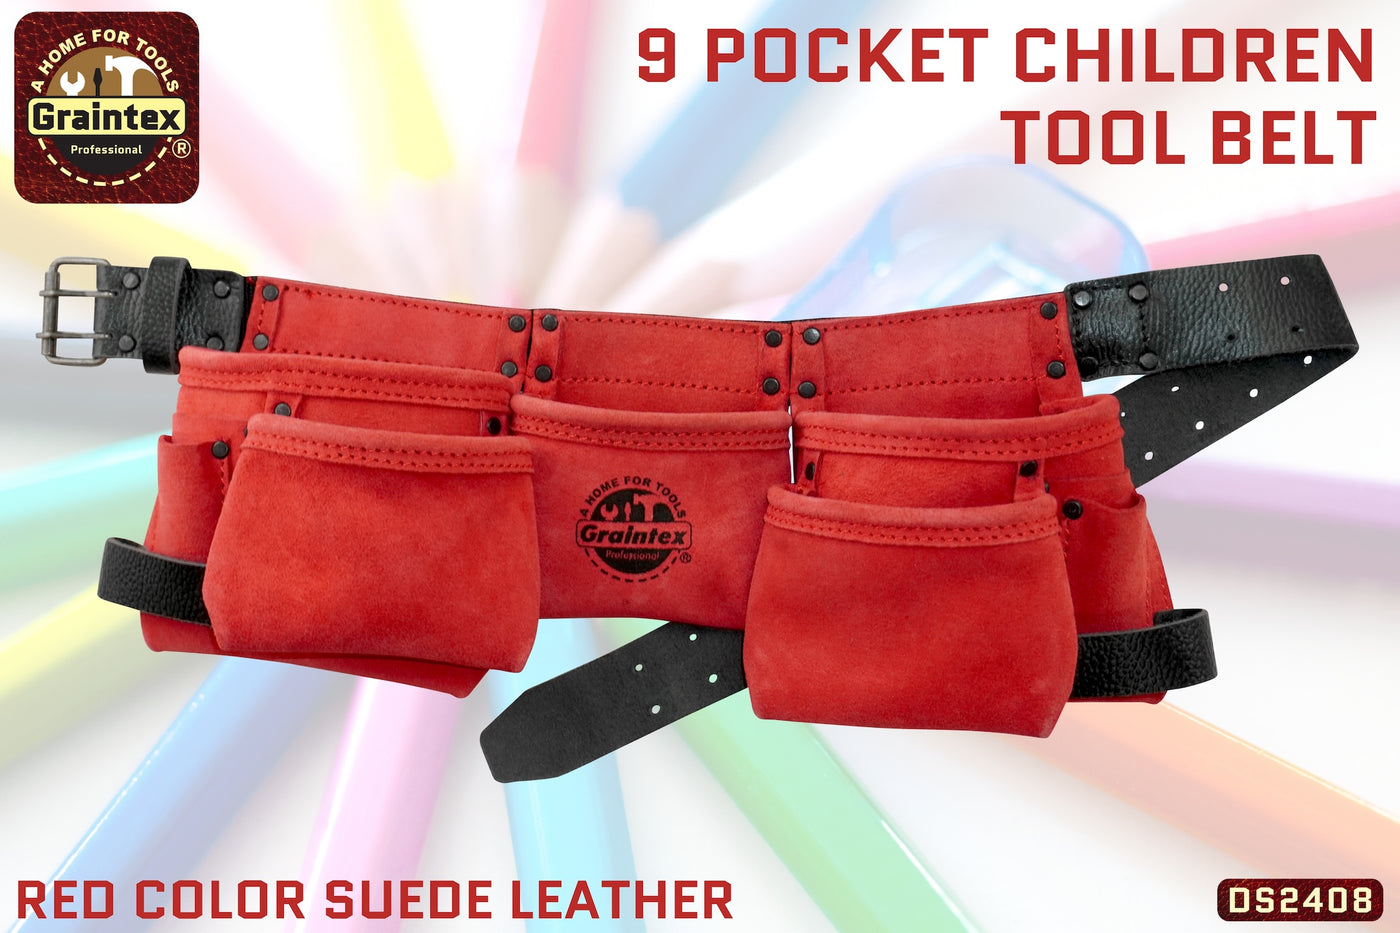 DS2408 :: 9 Pocket Children Tool Belt Red Color Suede Leather